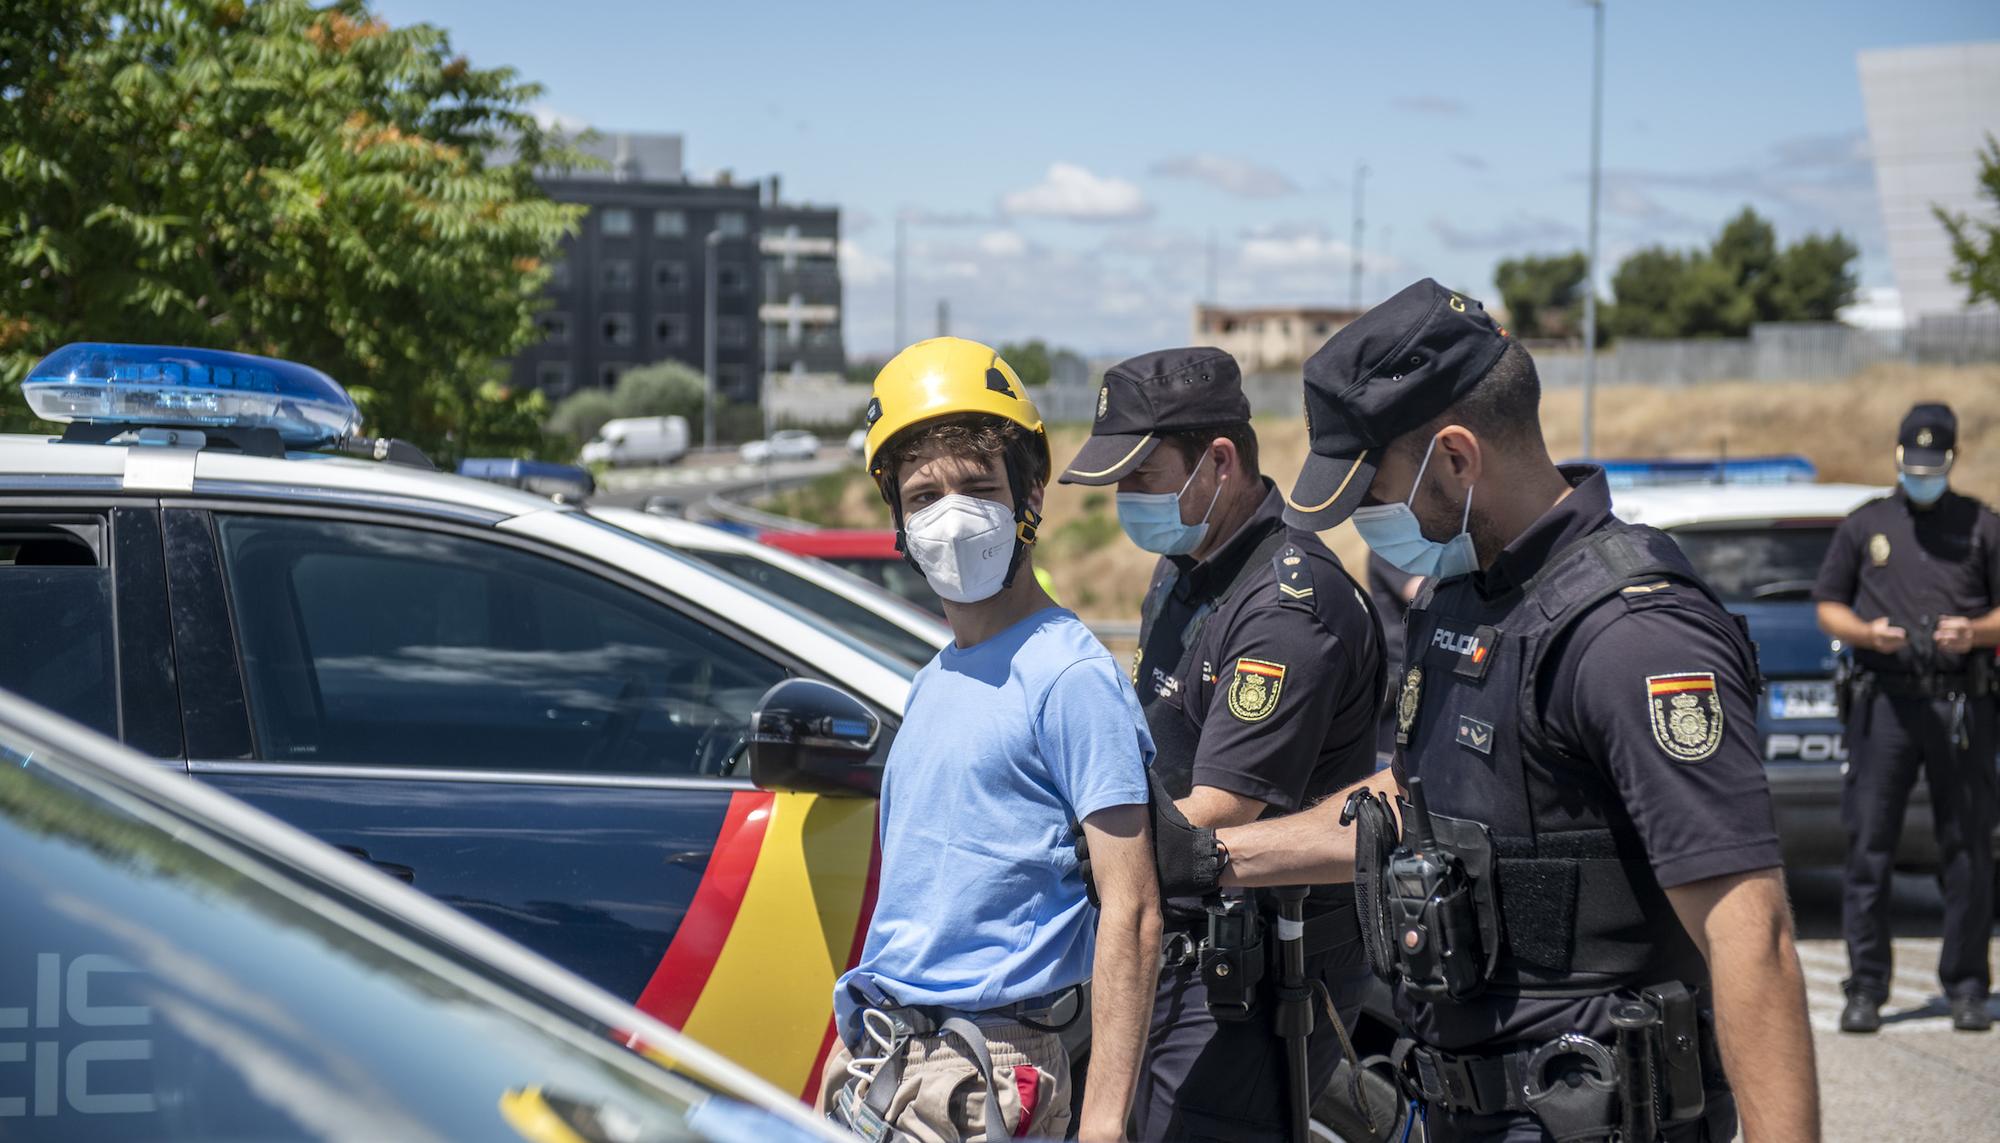 Rebelión por el Clima bloquea la sede de Repsol en Móstoles - 19